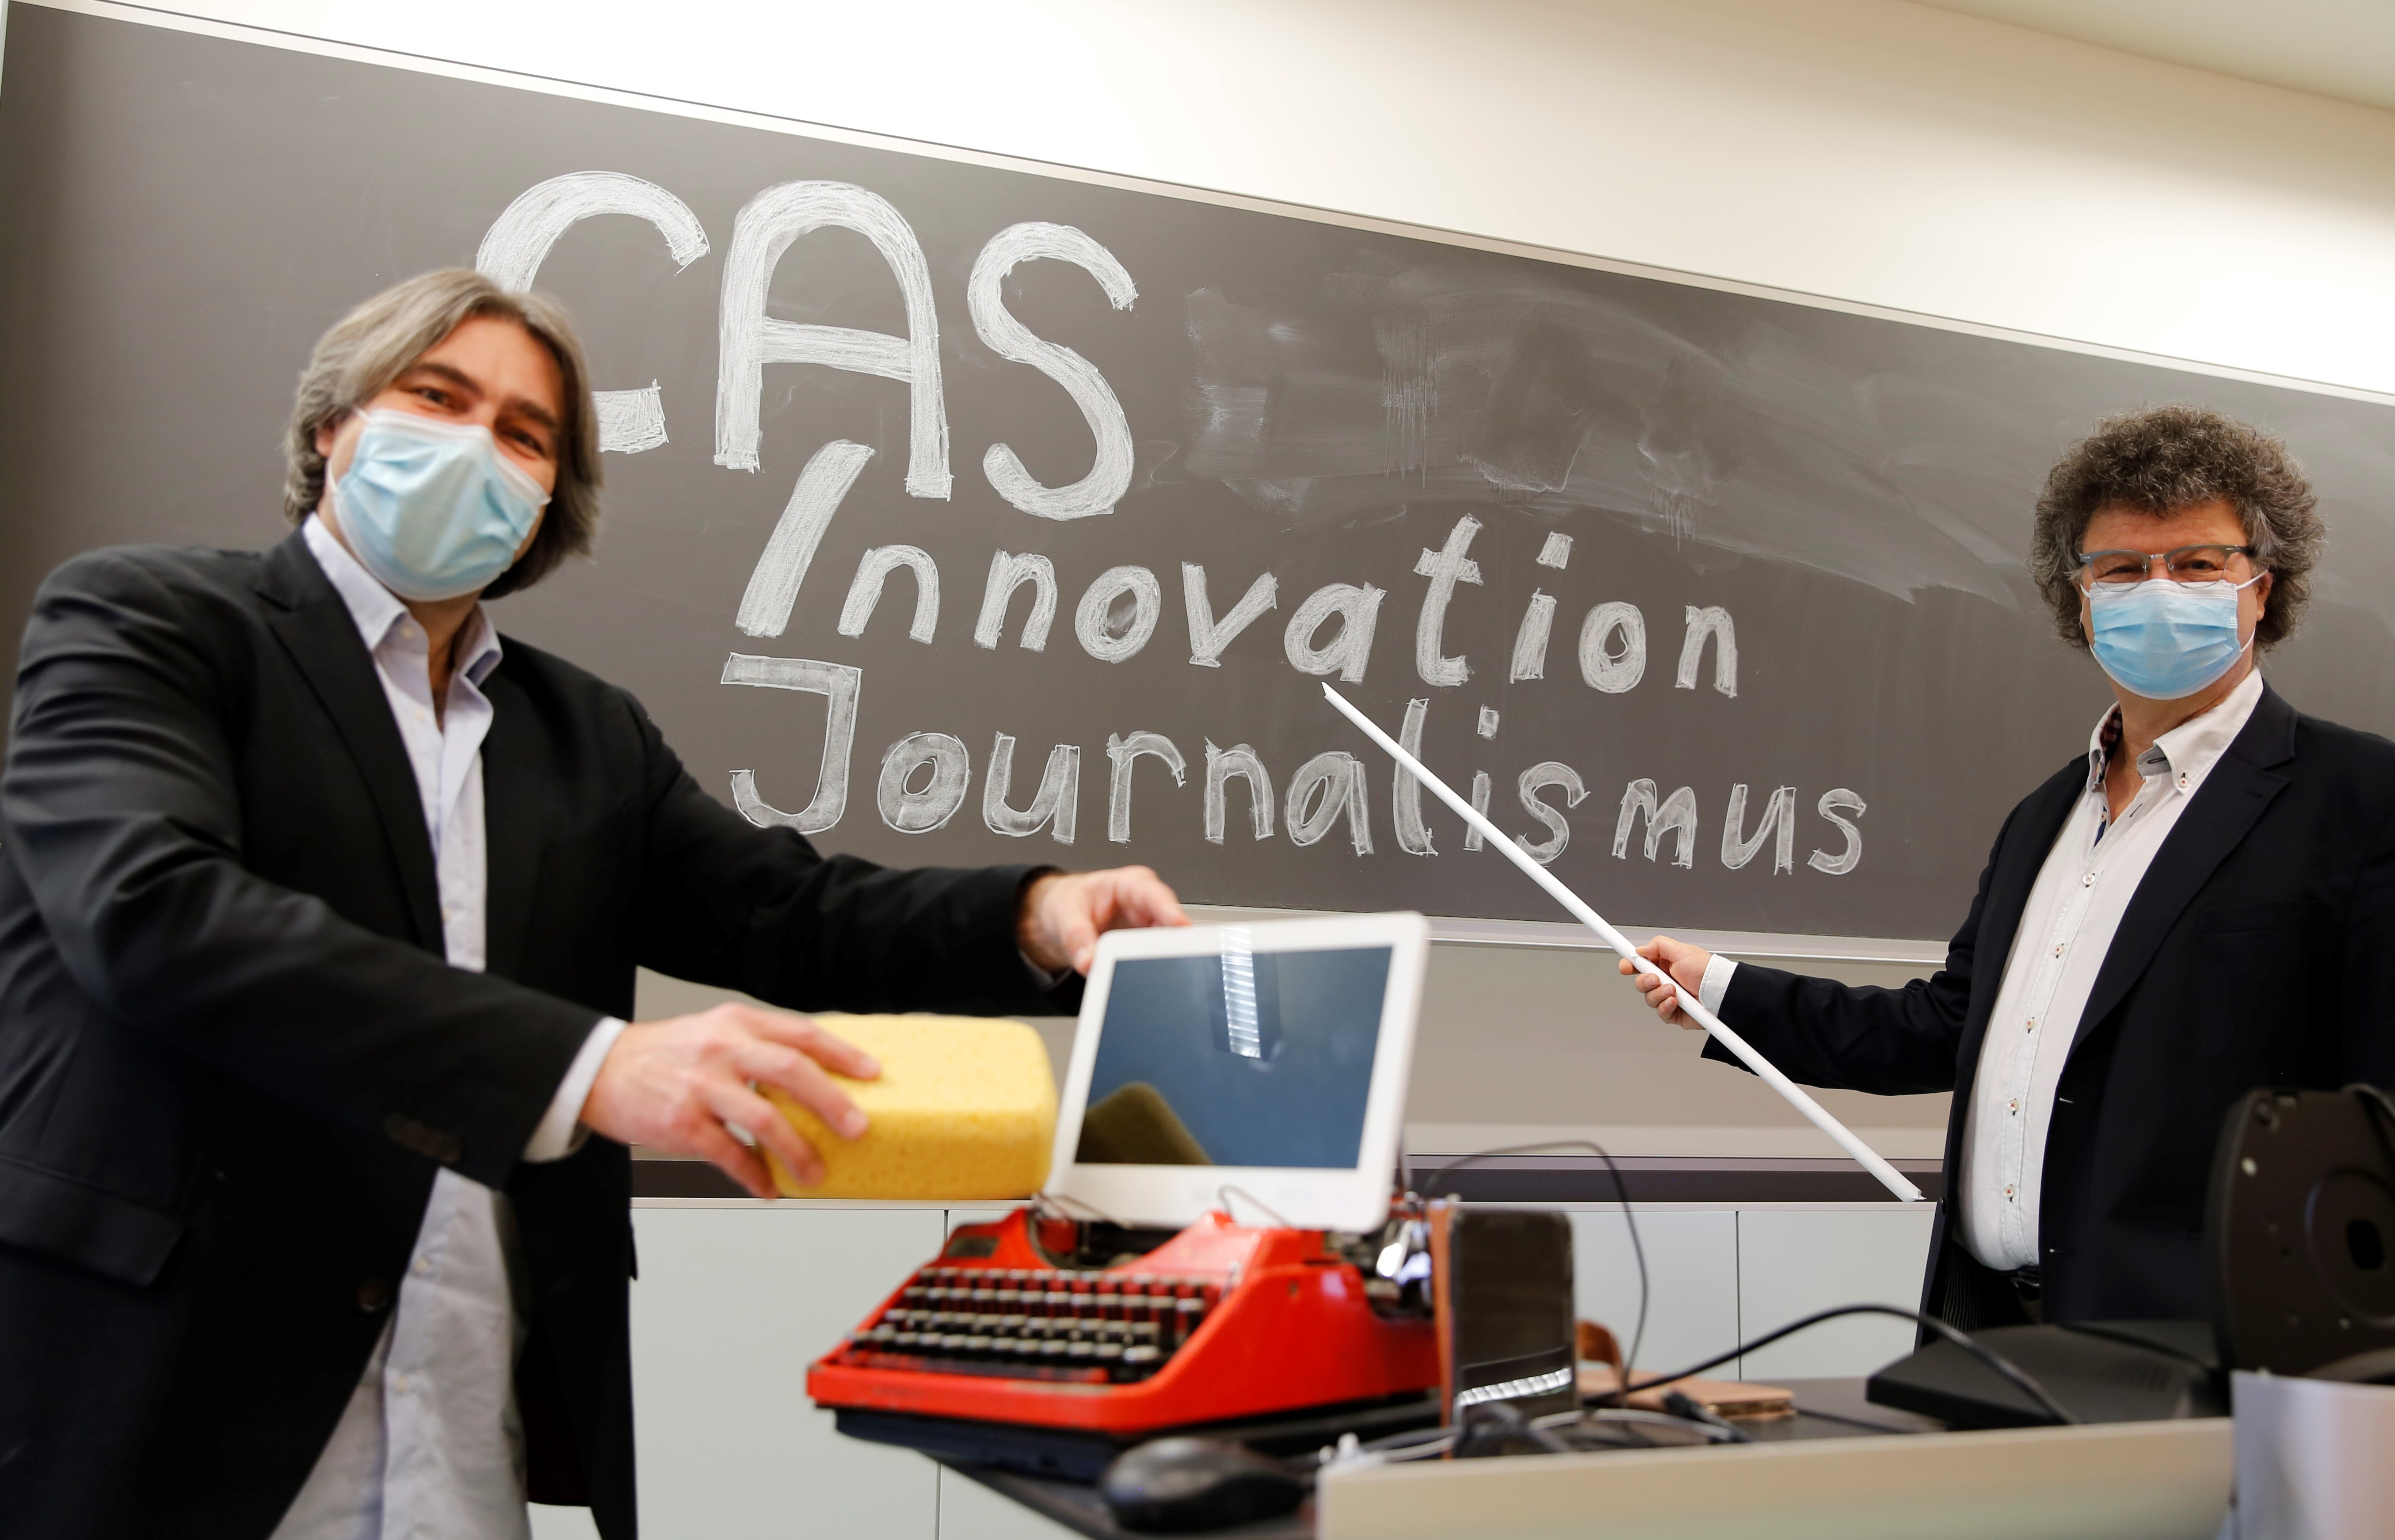 CAS Innovation